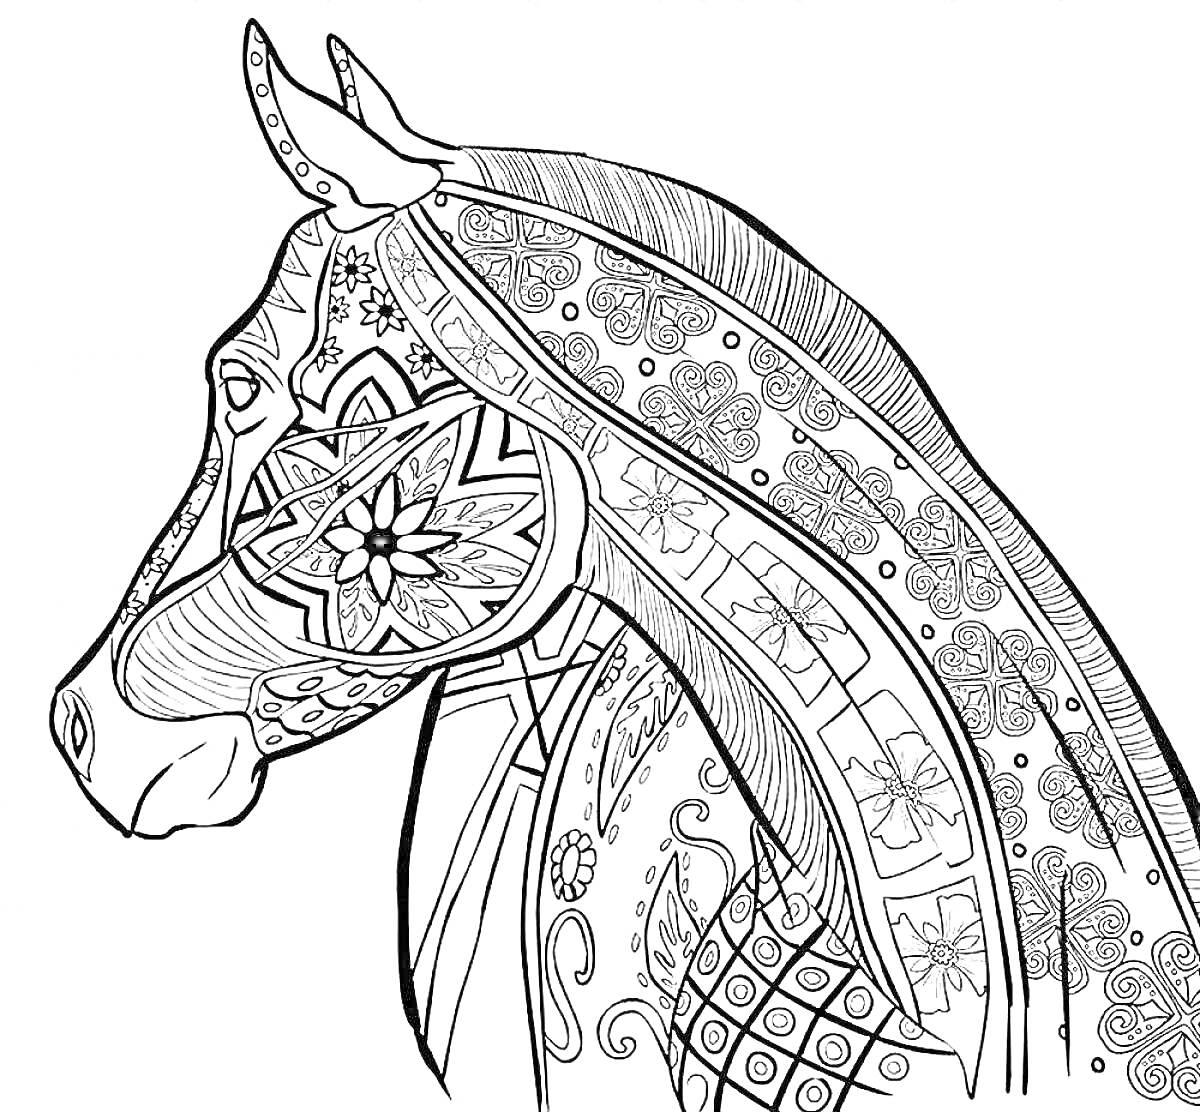 Антистресс лошадь с замысловатыми узорами, декоративными узорами на шее, геометрическими фигурами, цветочными элементами, спиралями и завитками